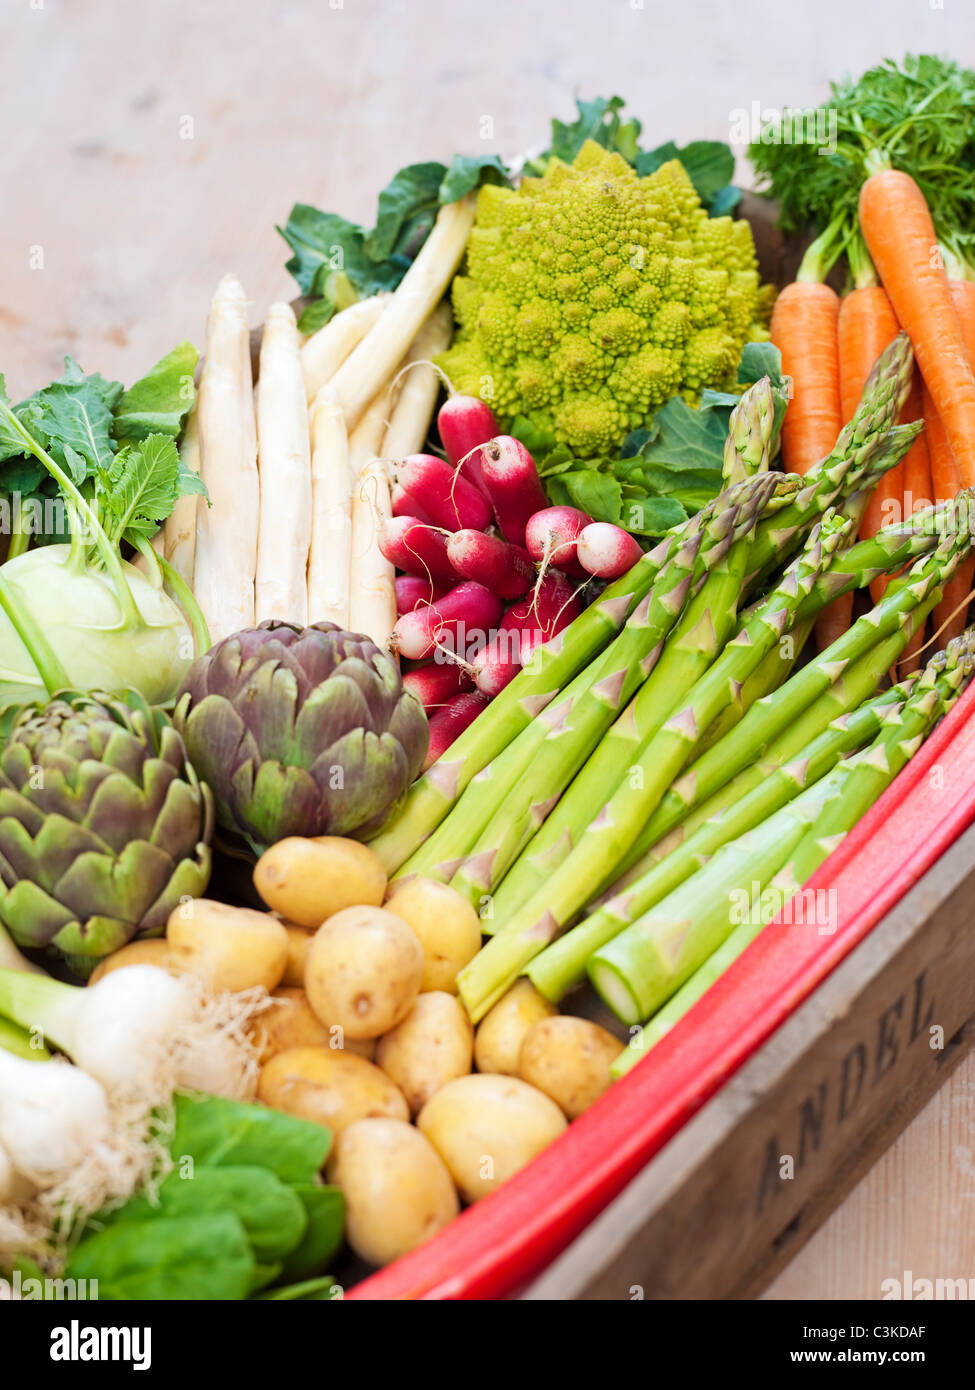 Basket full of vegetables Stock Photo